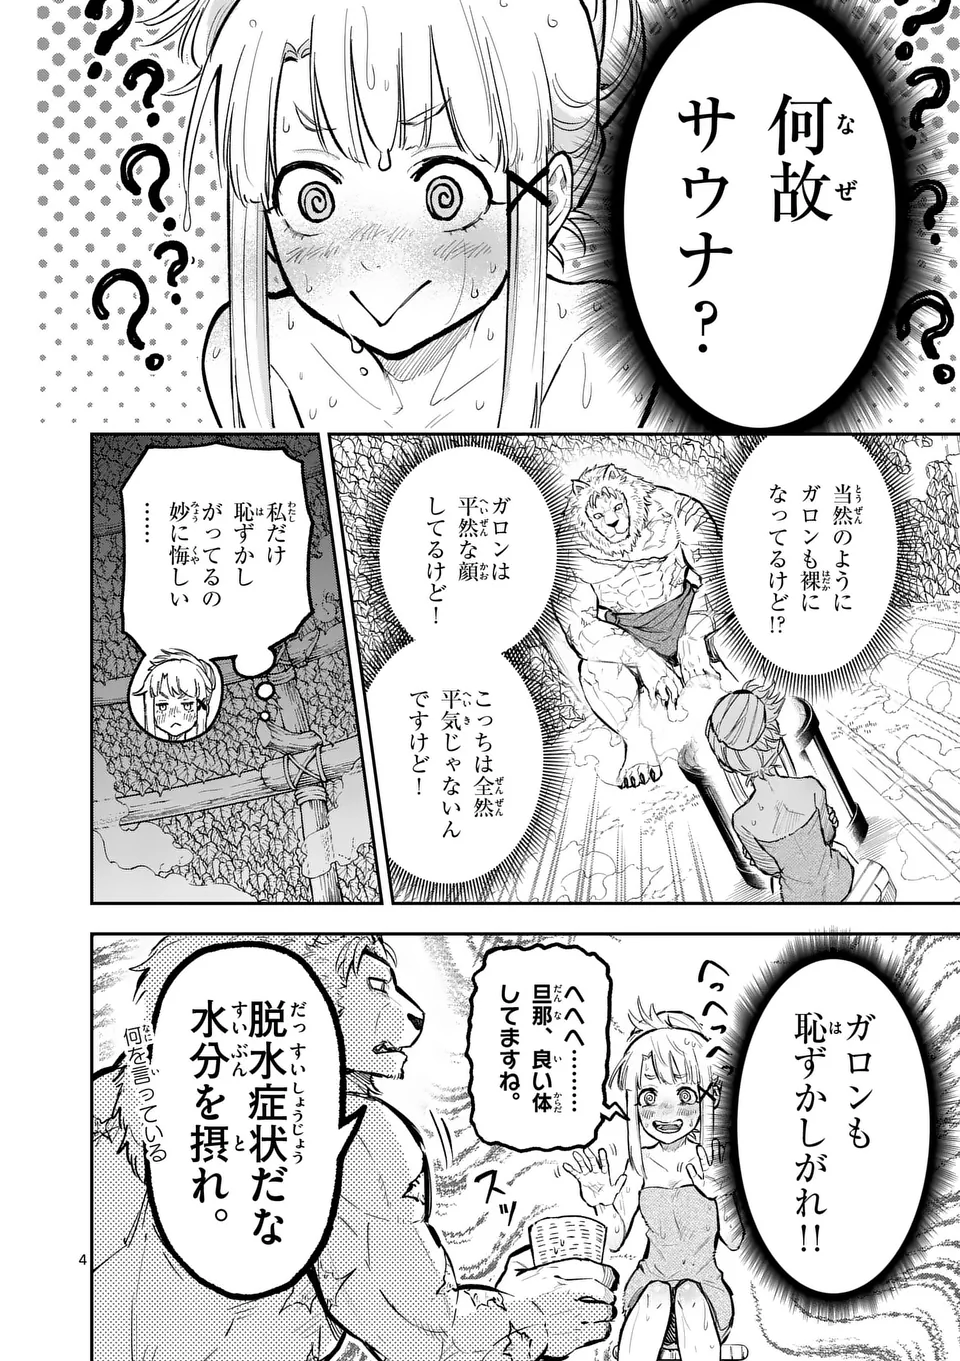 Juuou to Yakusou - Chapter 27 - Page 4